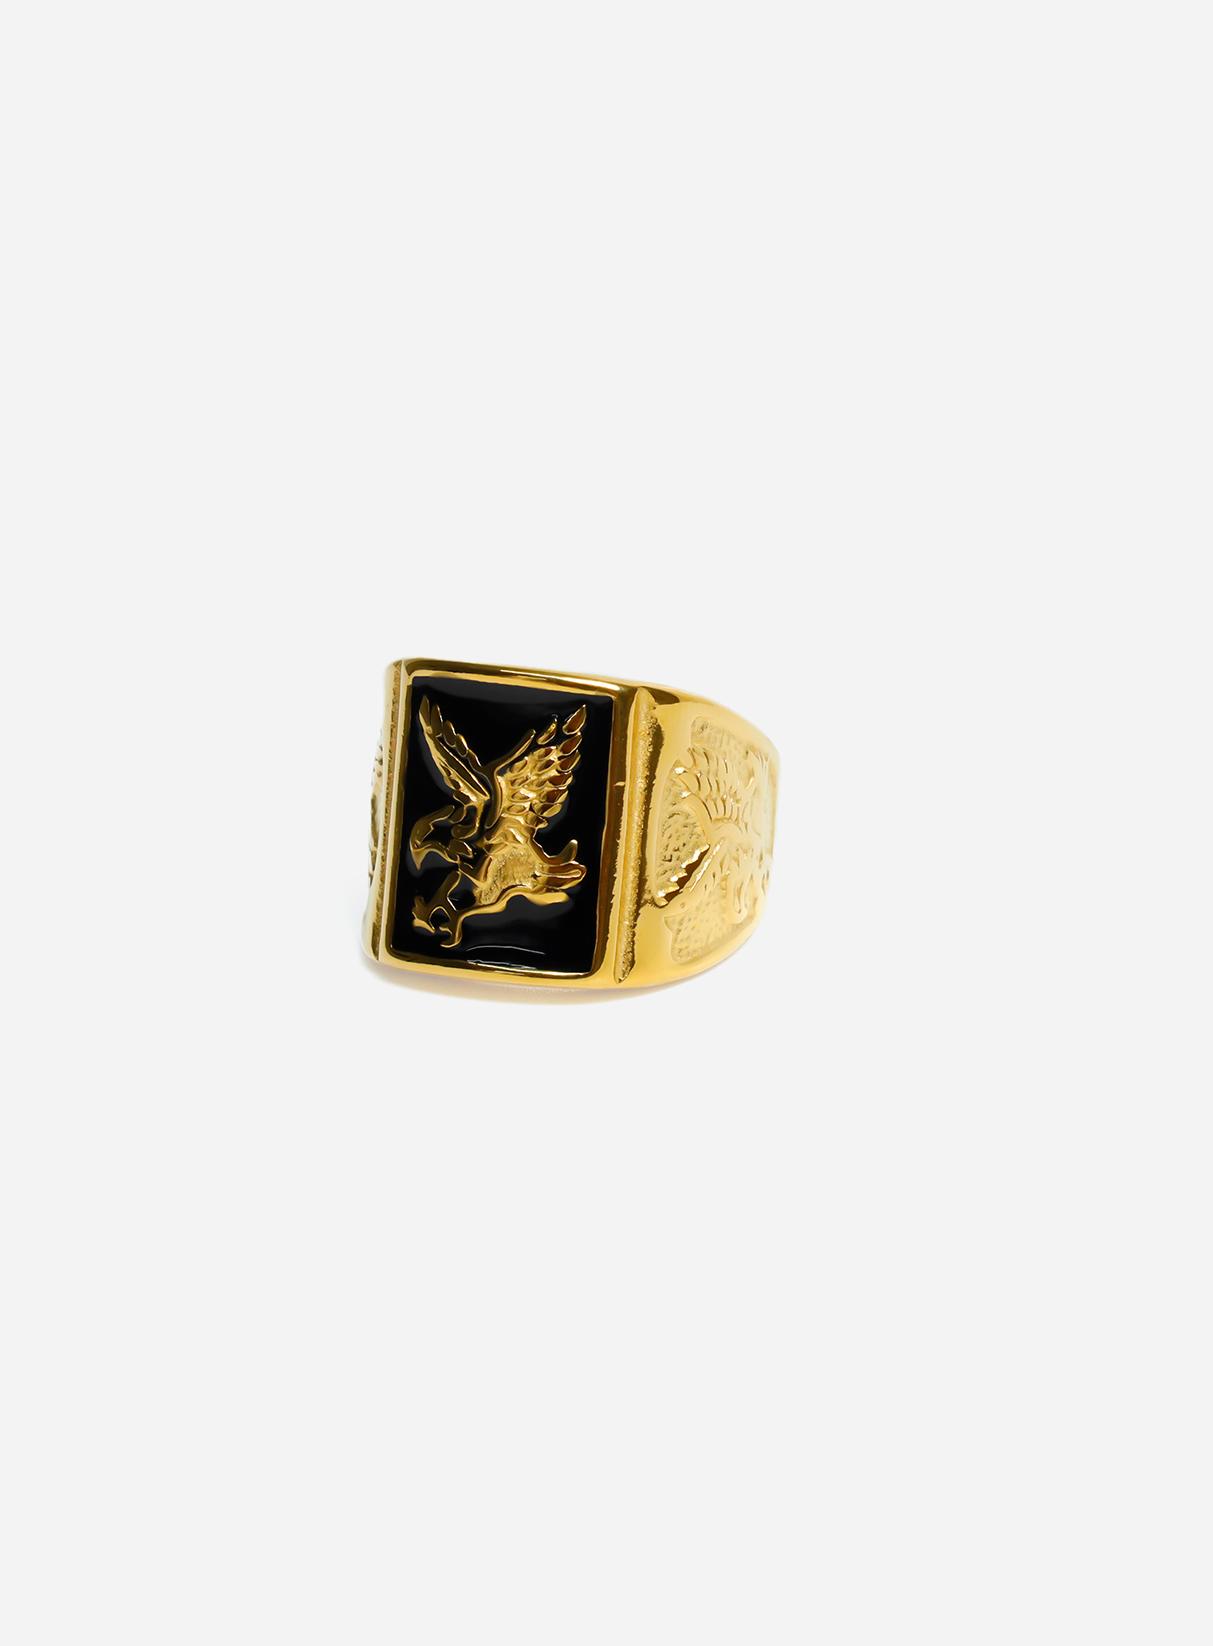 GD Golden Eagle Mens Ring